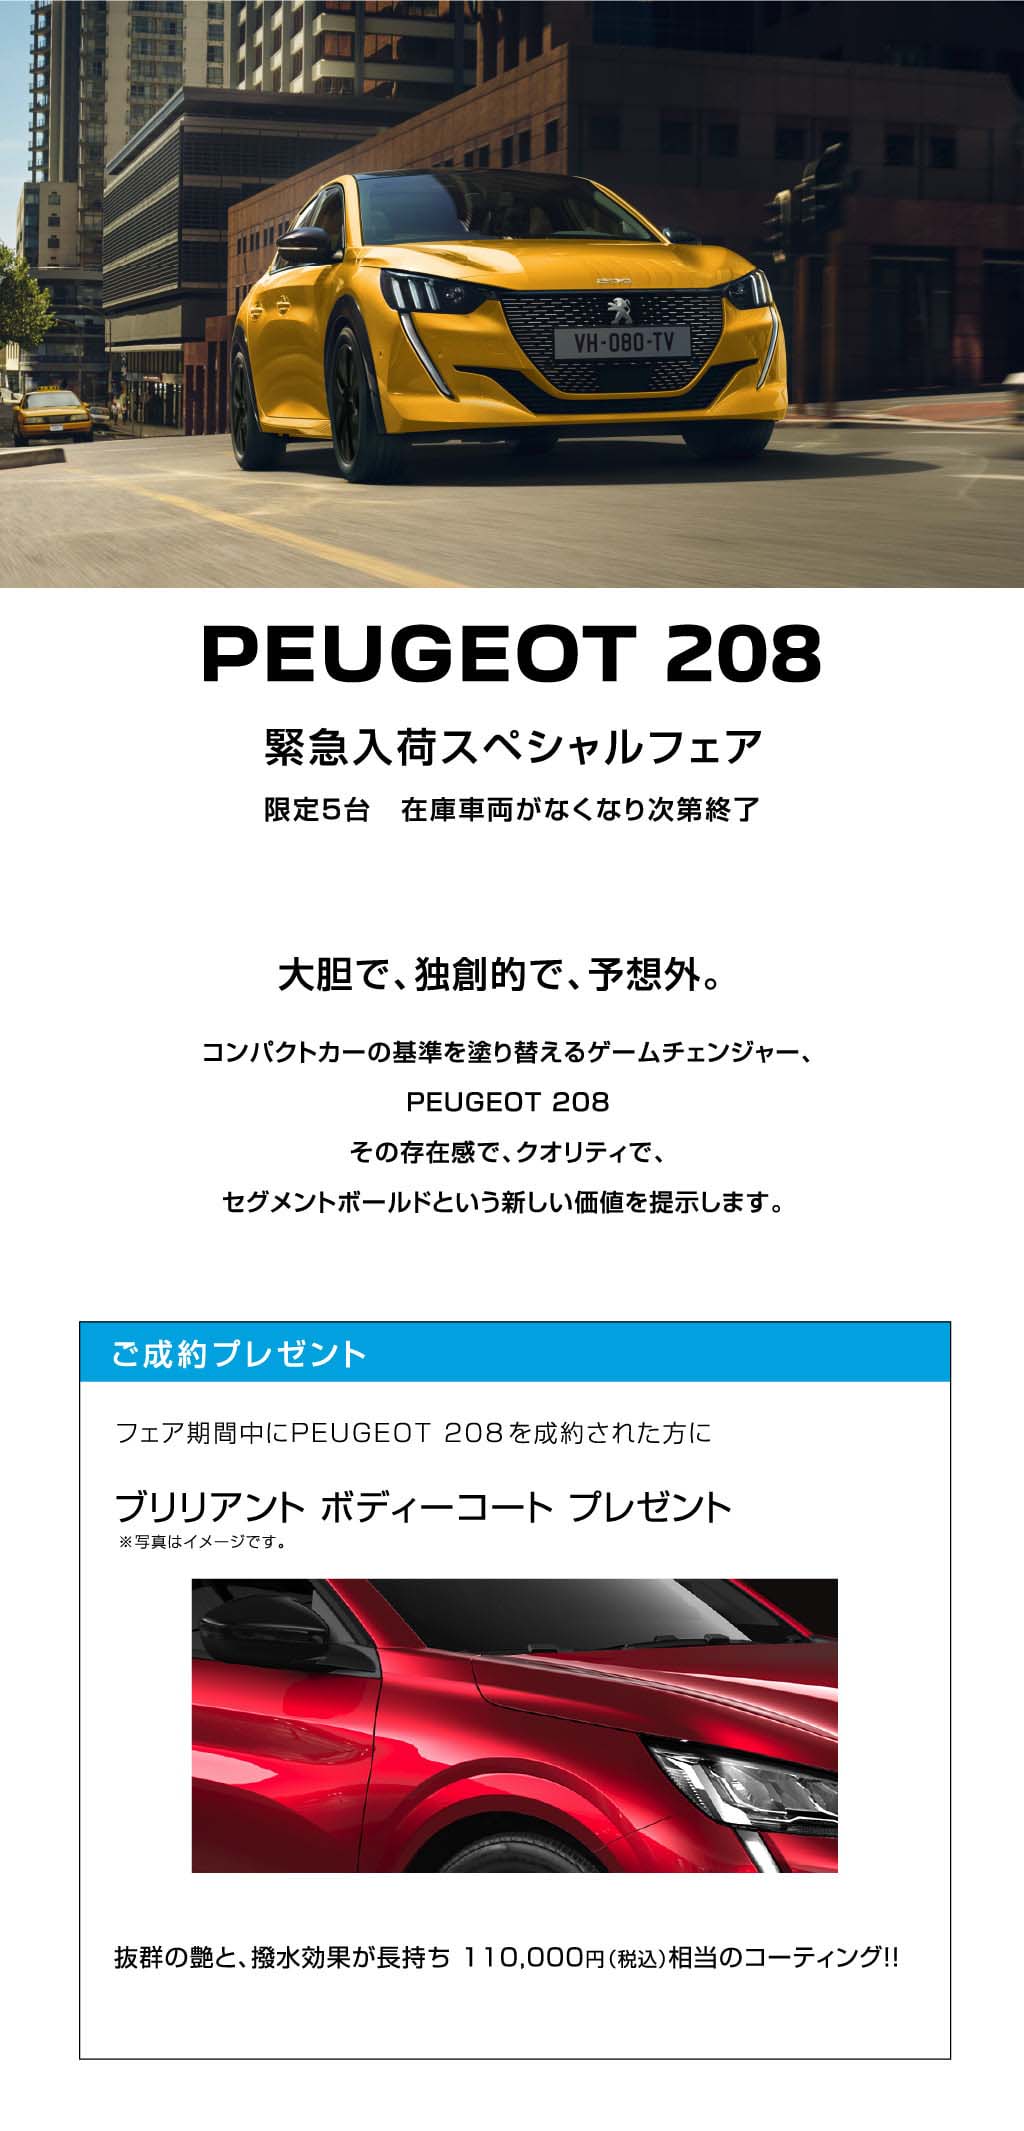 PEUGEOT 208 緊急入荷スペシャルフェア